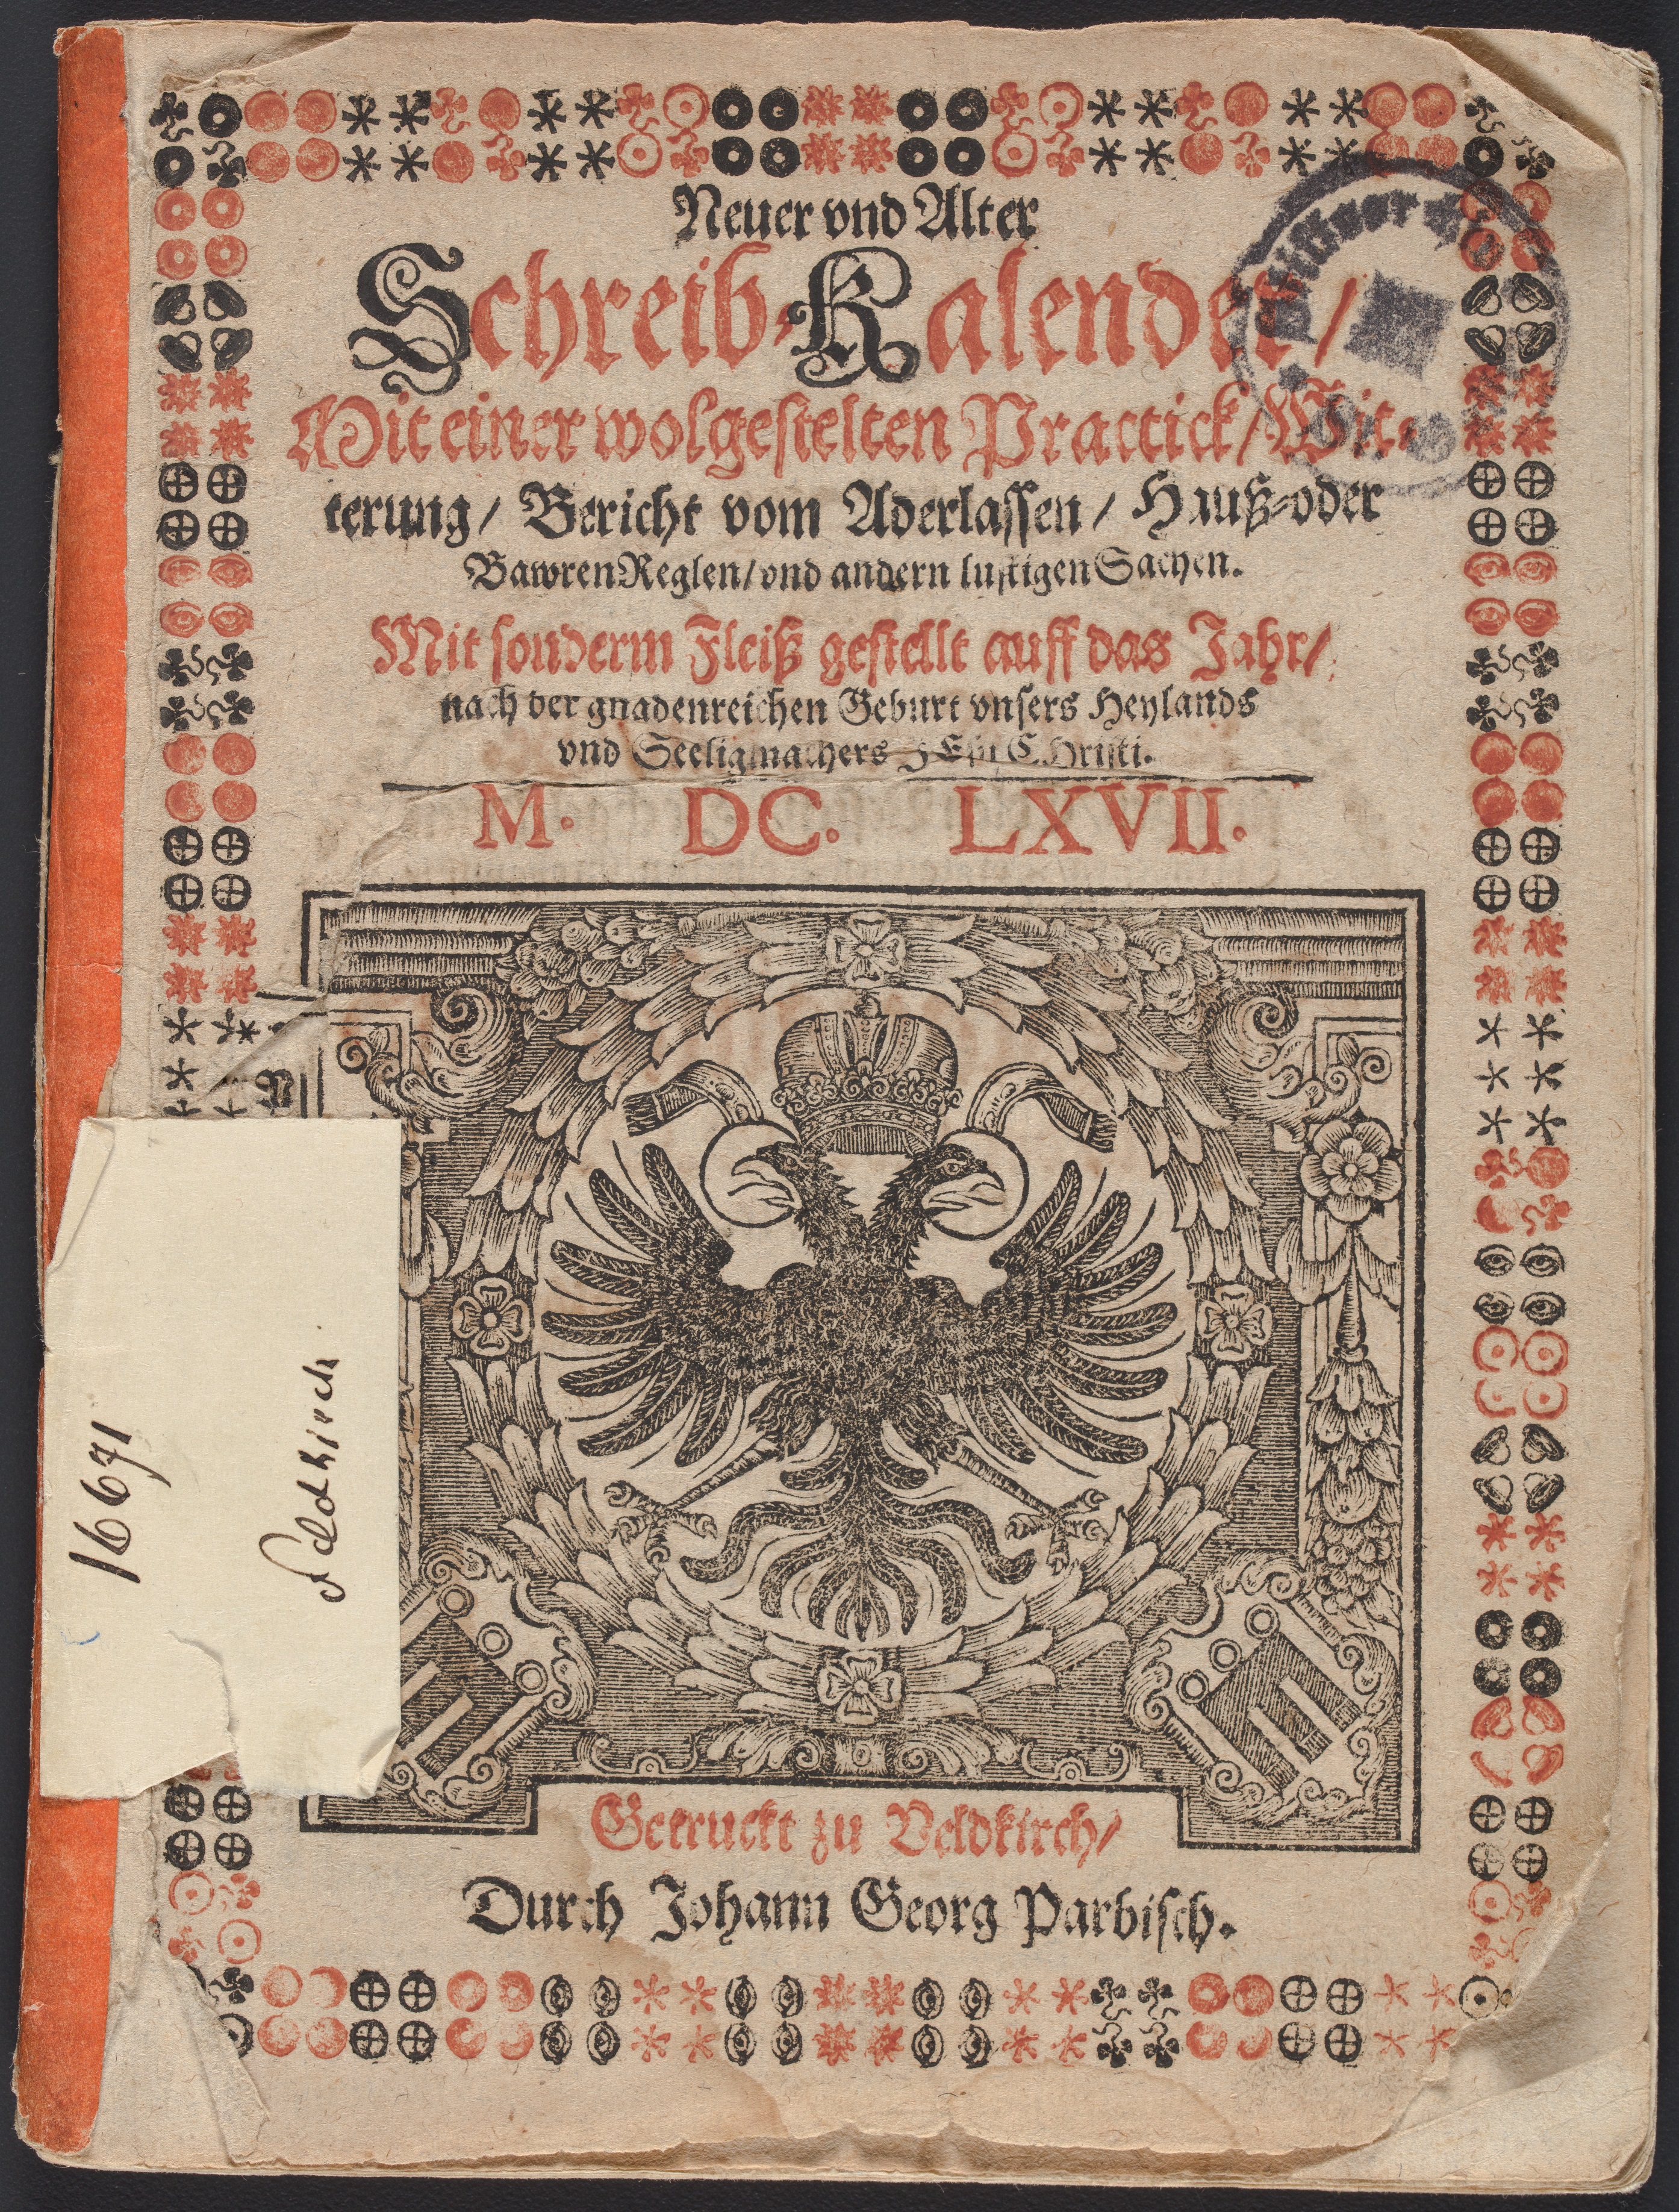 Stiftsarchiv St.Gallen, X 133, Titelseite Schreibkalender 1667